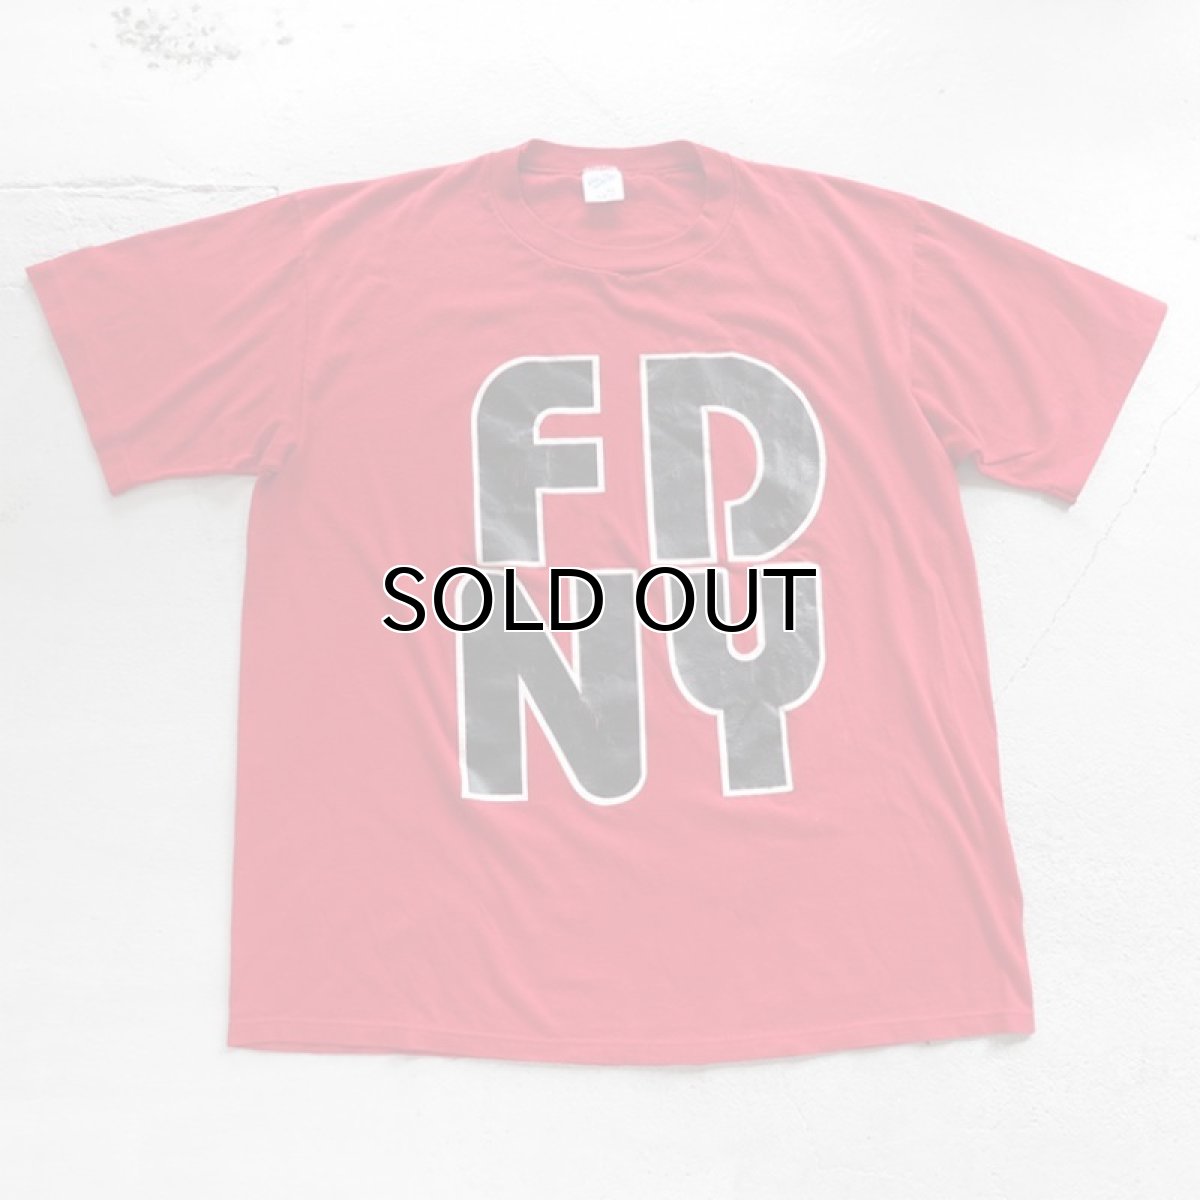 画像1: 1990's "FDNY" Print T-Shirt　RED　size L (1)